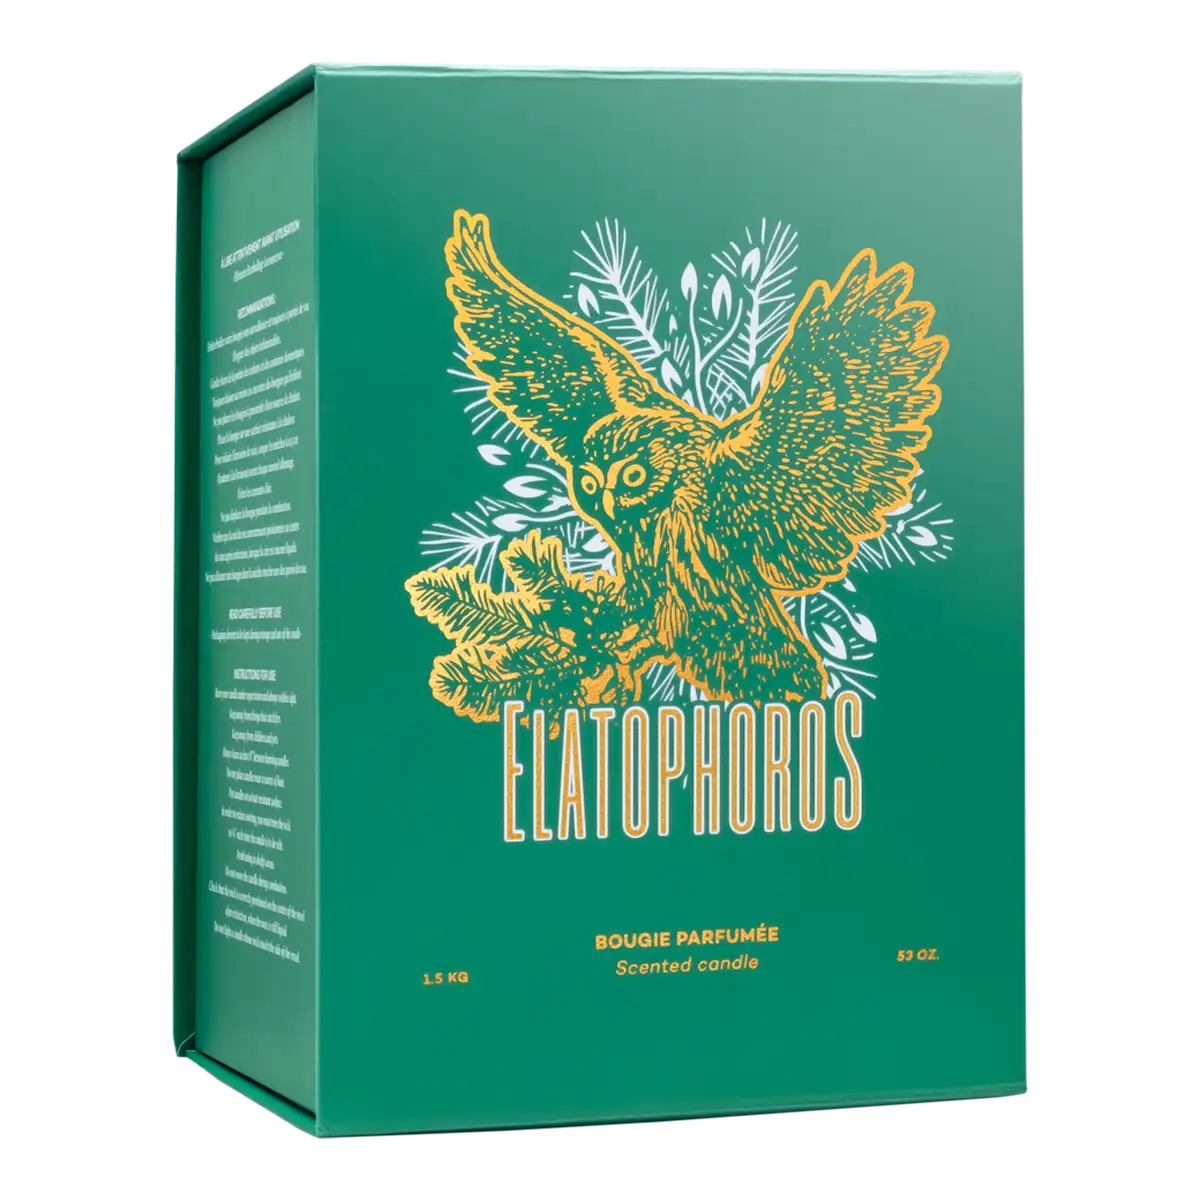 ELATOPHOROS aromatizēta svece 1,5kg (2023. gada versija) - Pieejama no 10. decembra